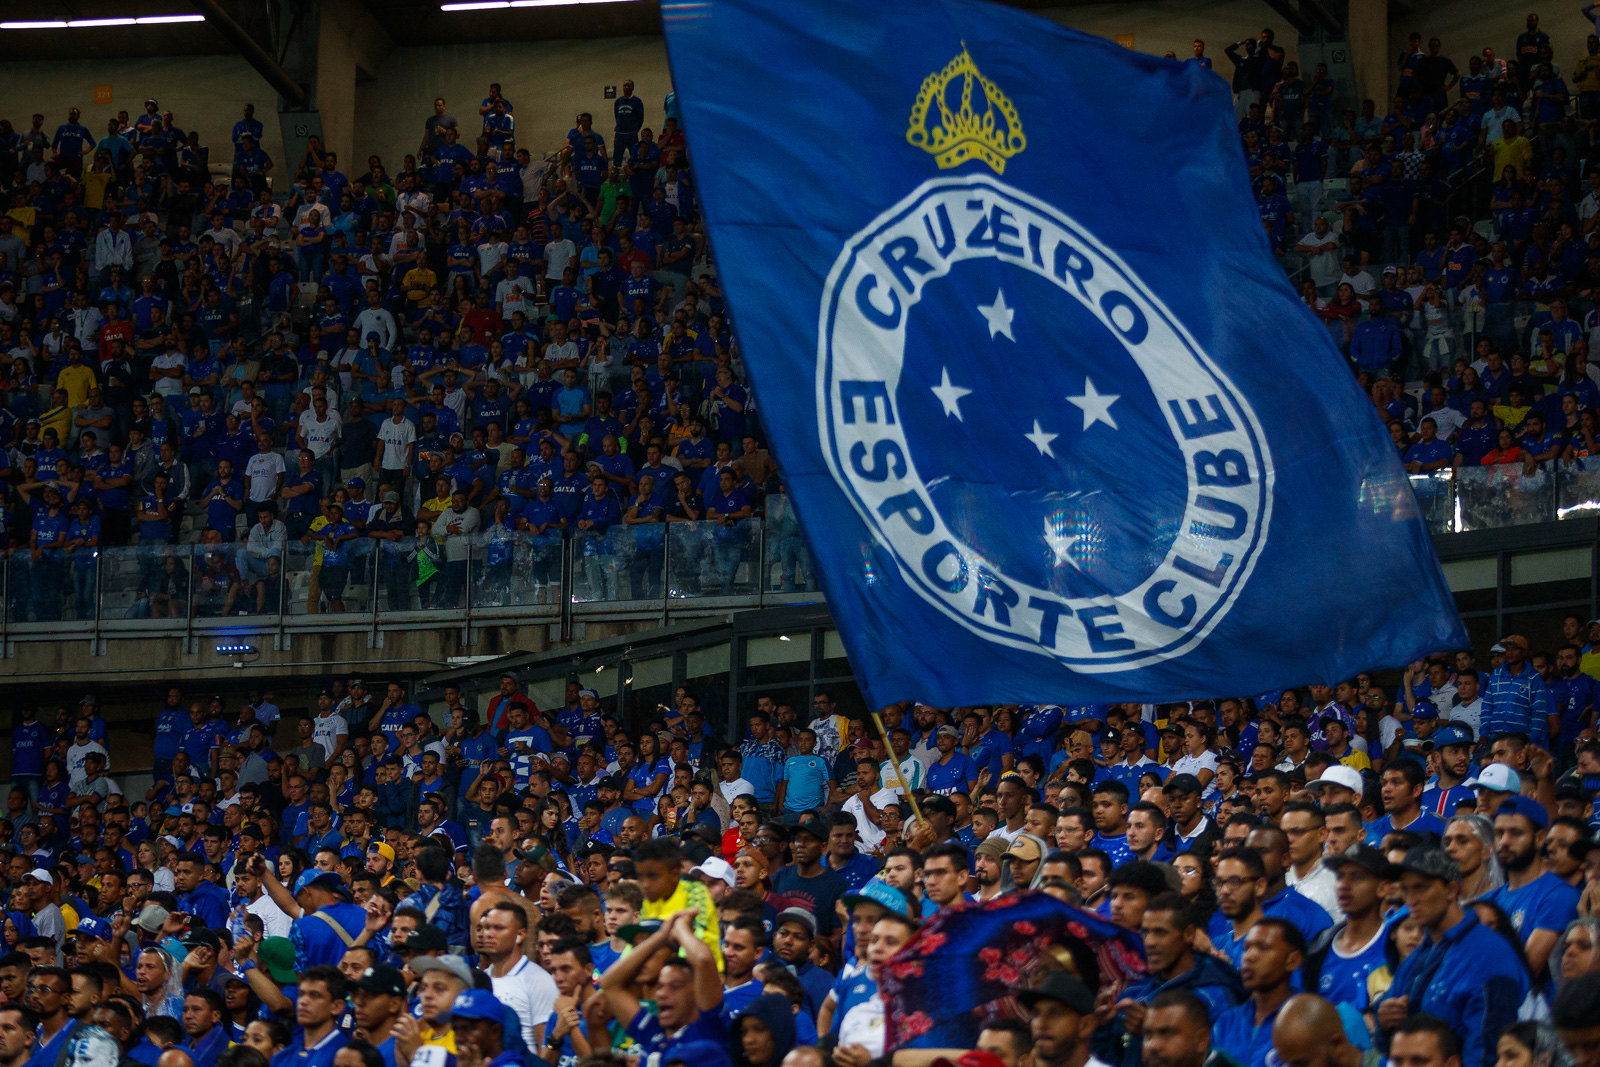 Cruzeiro o novo Soberano do futebol BR - LOL Esporte